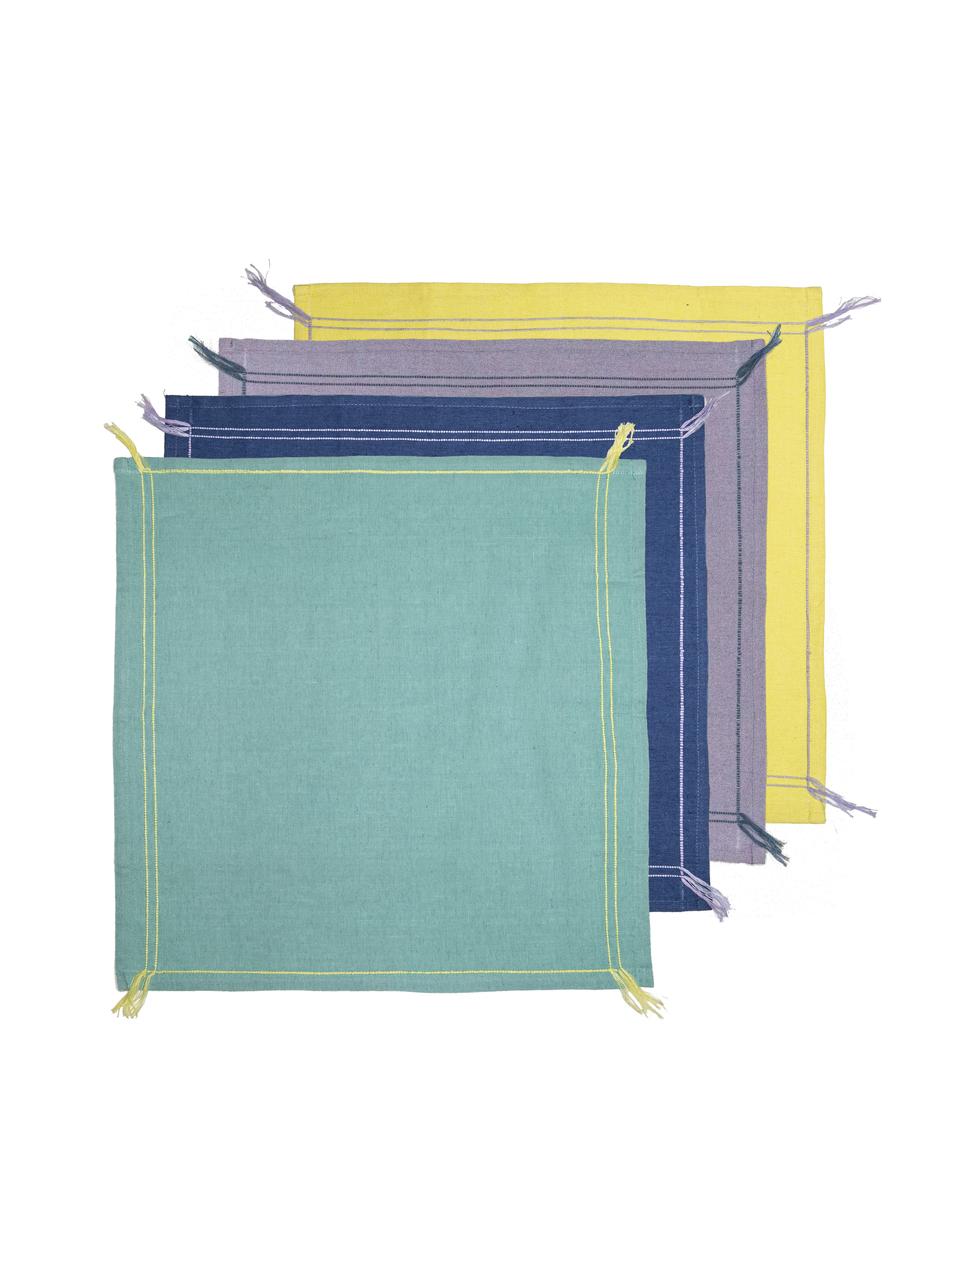 Katoenen servetten Billie met kwastjes, set van 4, Katoen, linnen, Turquoise, donkerblauw, lila, geel, B 45 x L 45 cm